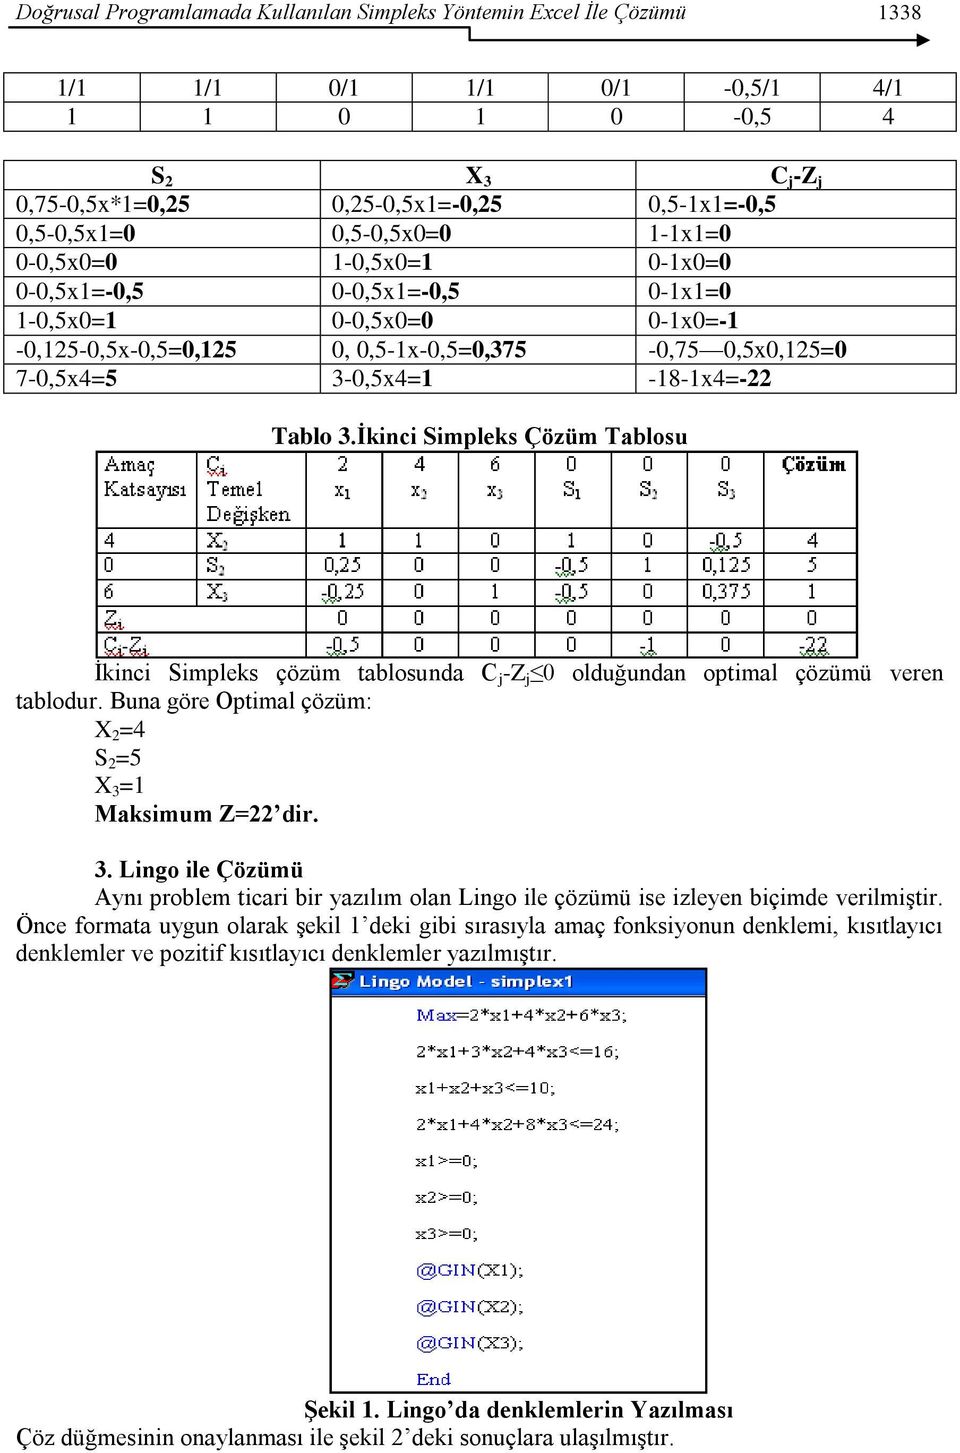 Tablo 3.İkinci Simpleks Çözüm Tablosu Ġkinci Simpleks çözüm tablosunda C j -Z j 0 olduğundan optimal çözümü veren tablodur. Buna göre Optimal çözüm: X 2 =4 S 2 =5 X 3 =1 Maksimum Z=22 dir. 3. Lingo ile Çözümü Aynı problem ticari bir yazılım olan Lingo ile çözümü ise izleyen biçimde verilmiģtir.